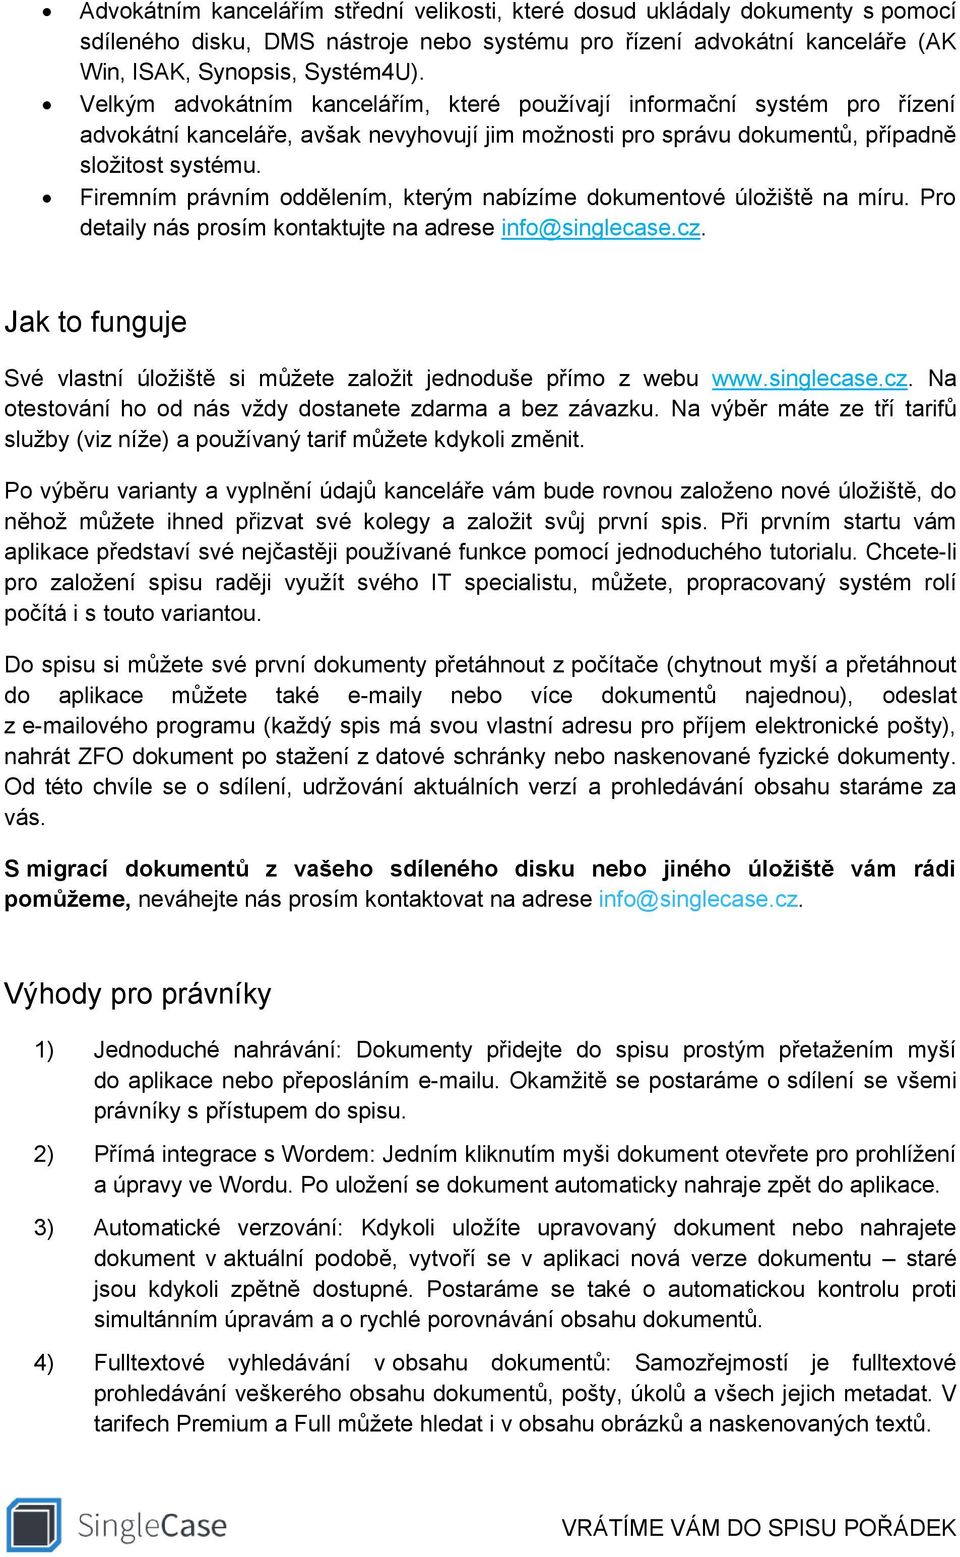 Firemním právním oddělením, kterým nabízíme dokumentové úložiště na míru. Pro detaily nás prosím kontaktujte na adrese info@singlecase.cz.